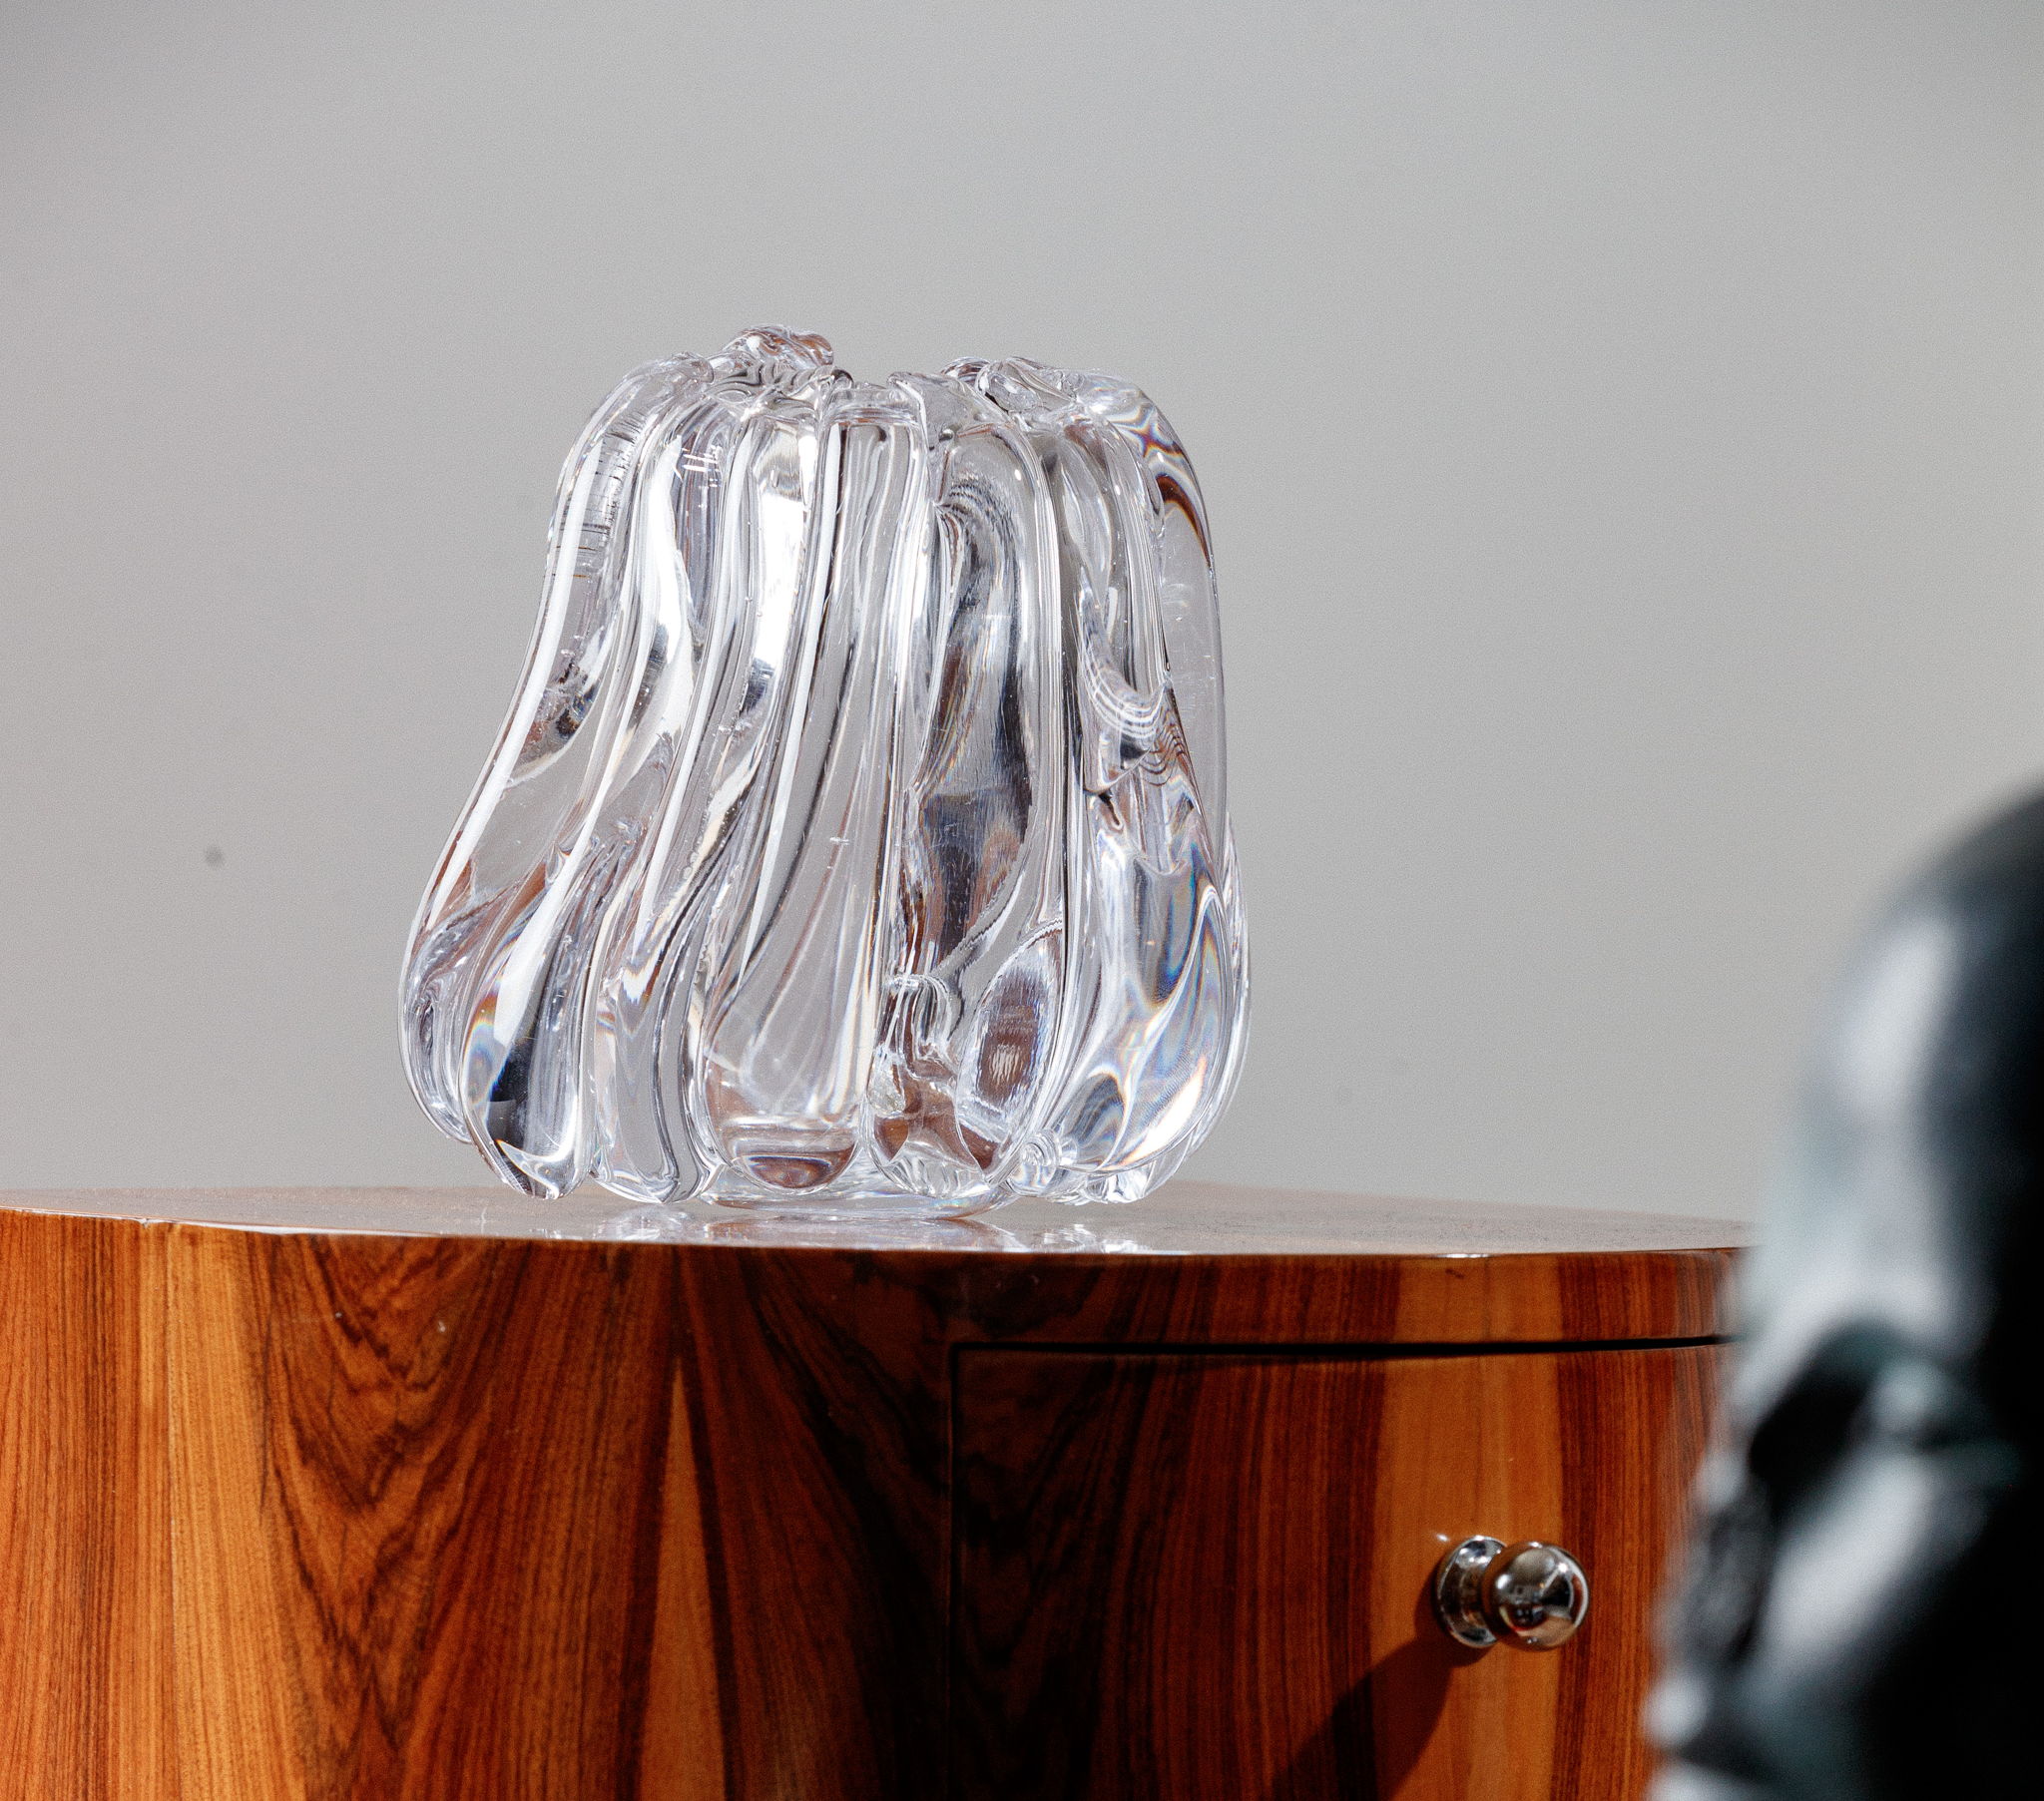 La sculpture Reflection sublime la fluidité du verre. Ses courbes évocatrices sont le fruit du soufflage organique à main levée, chaque exemplaire étant unique.